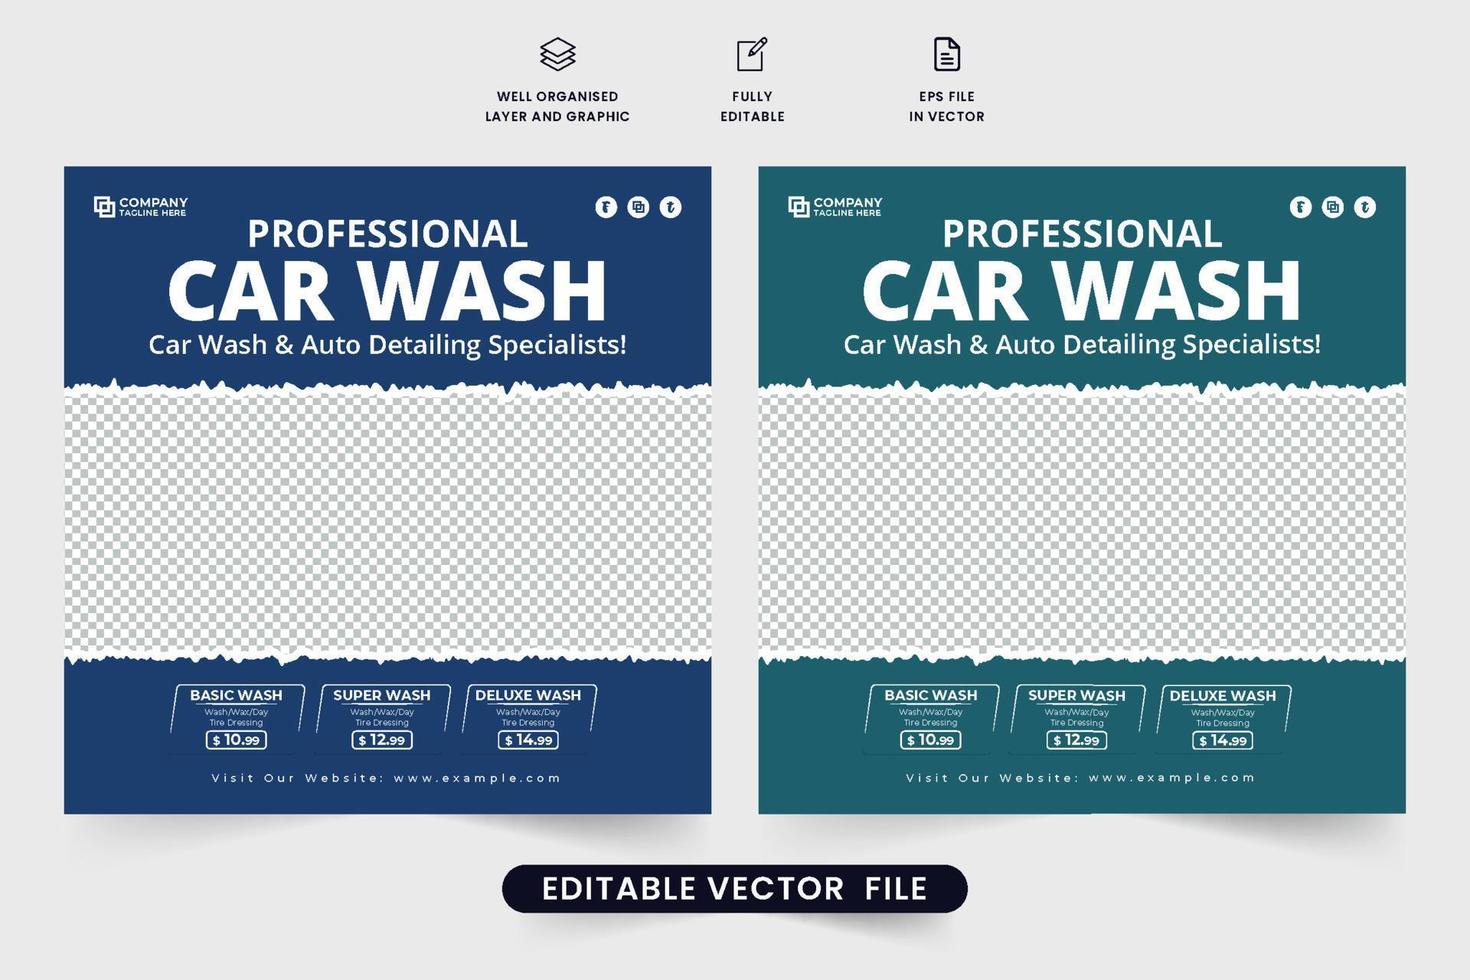 diseño de banner web de servicio de mantenimiento y limpieza de automóviles con colores azul oscuro. moderno vector de publicación de medios sociales de lavado de autos con efecto de pincel. vector de plantilla de anuncio de servicio de limpieza de vehículos.